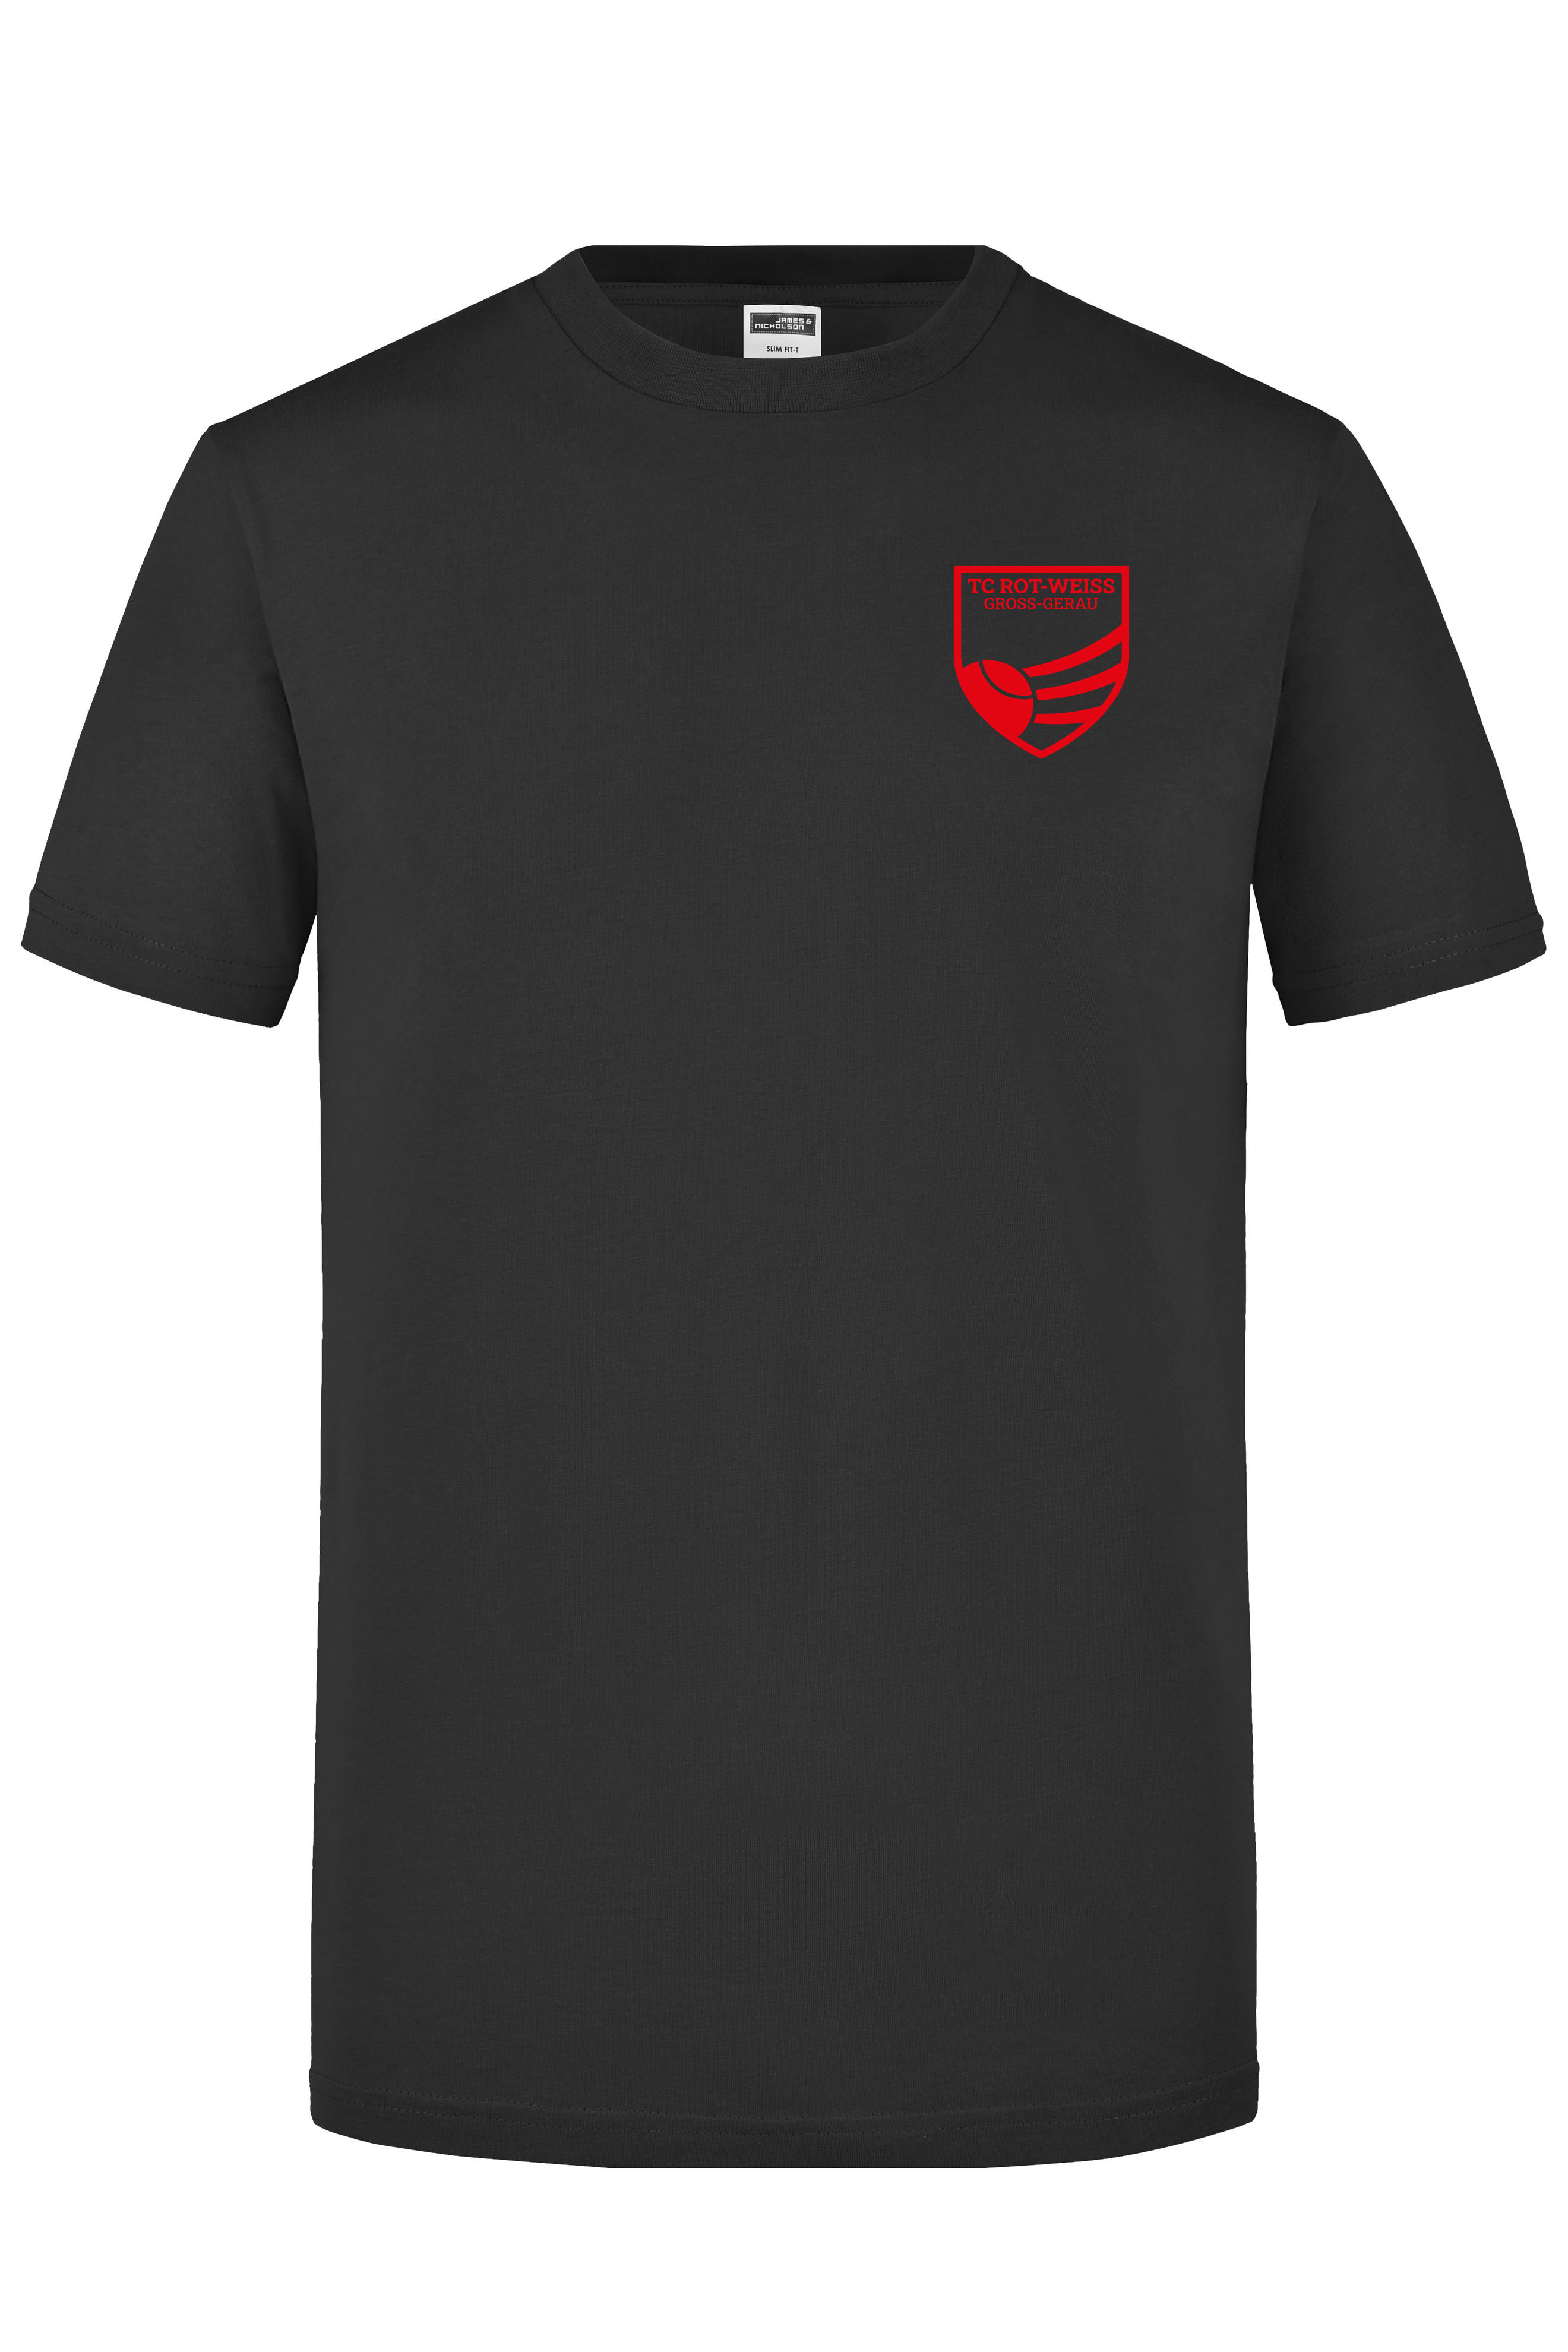 TC Rot-Weiss - Vorteil Dein Name - T-Shirt schwarz